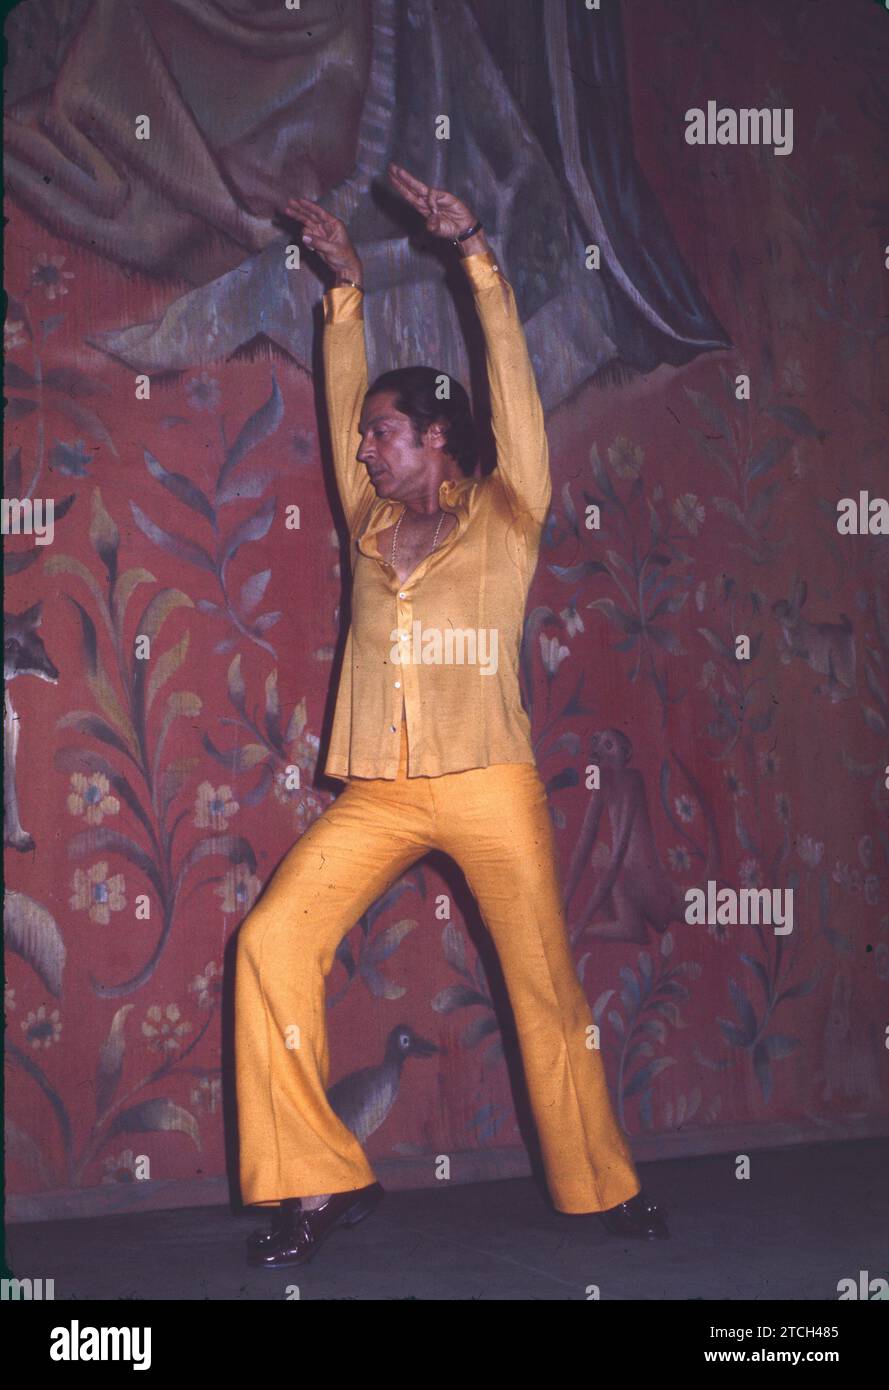 1975 (CA.). Antonio der Tänzer während einer seiner Auftritte. Quelle: Album / Archivo ABC / Teodoro Naranjo Domínguez Stockfoto